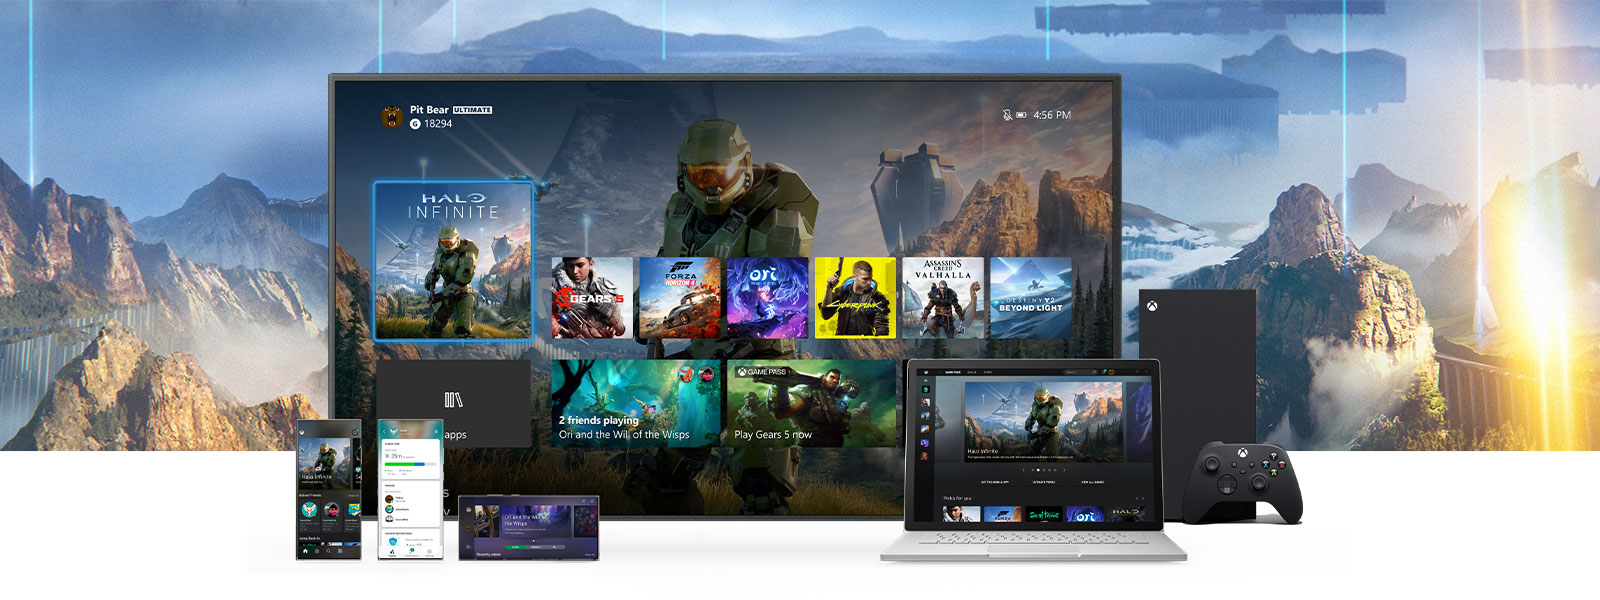 Het Xbox Dashboard wordt weergegeven op een tv naast een Xbox Series X. Extra apparaten als een pc en mobiele apparaten staan voor de tv.